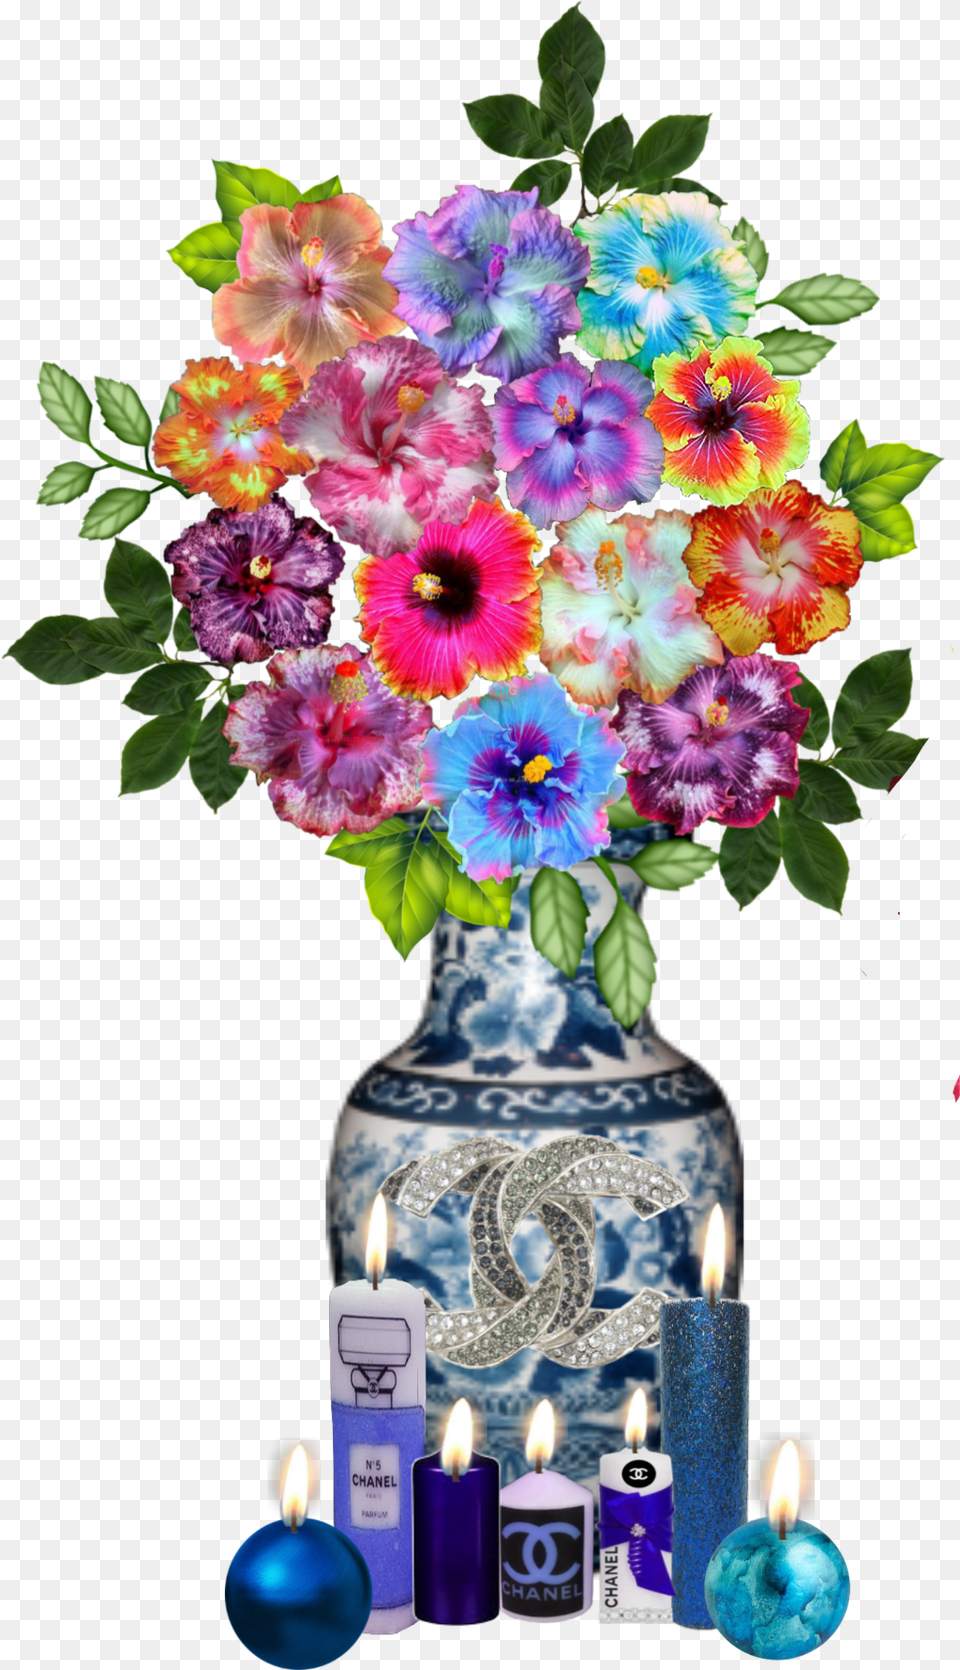 Rose Roses Vase Flowers Flower Decor Candles Bouquet, Flower Bouquet, Plant, Flower Arrangement, Pottery Png